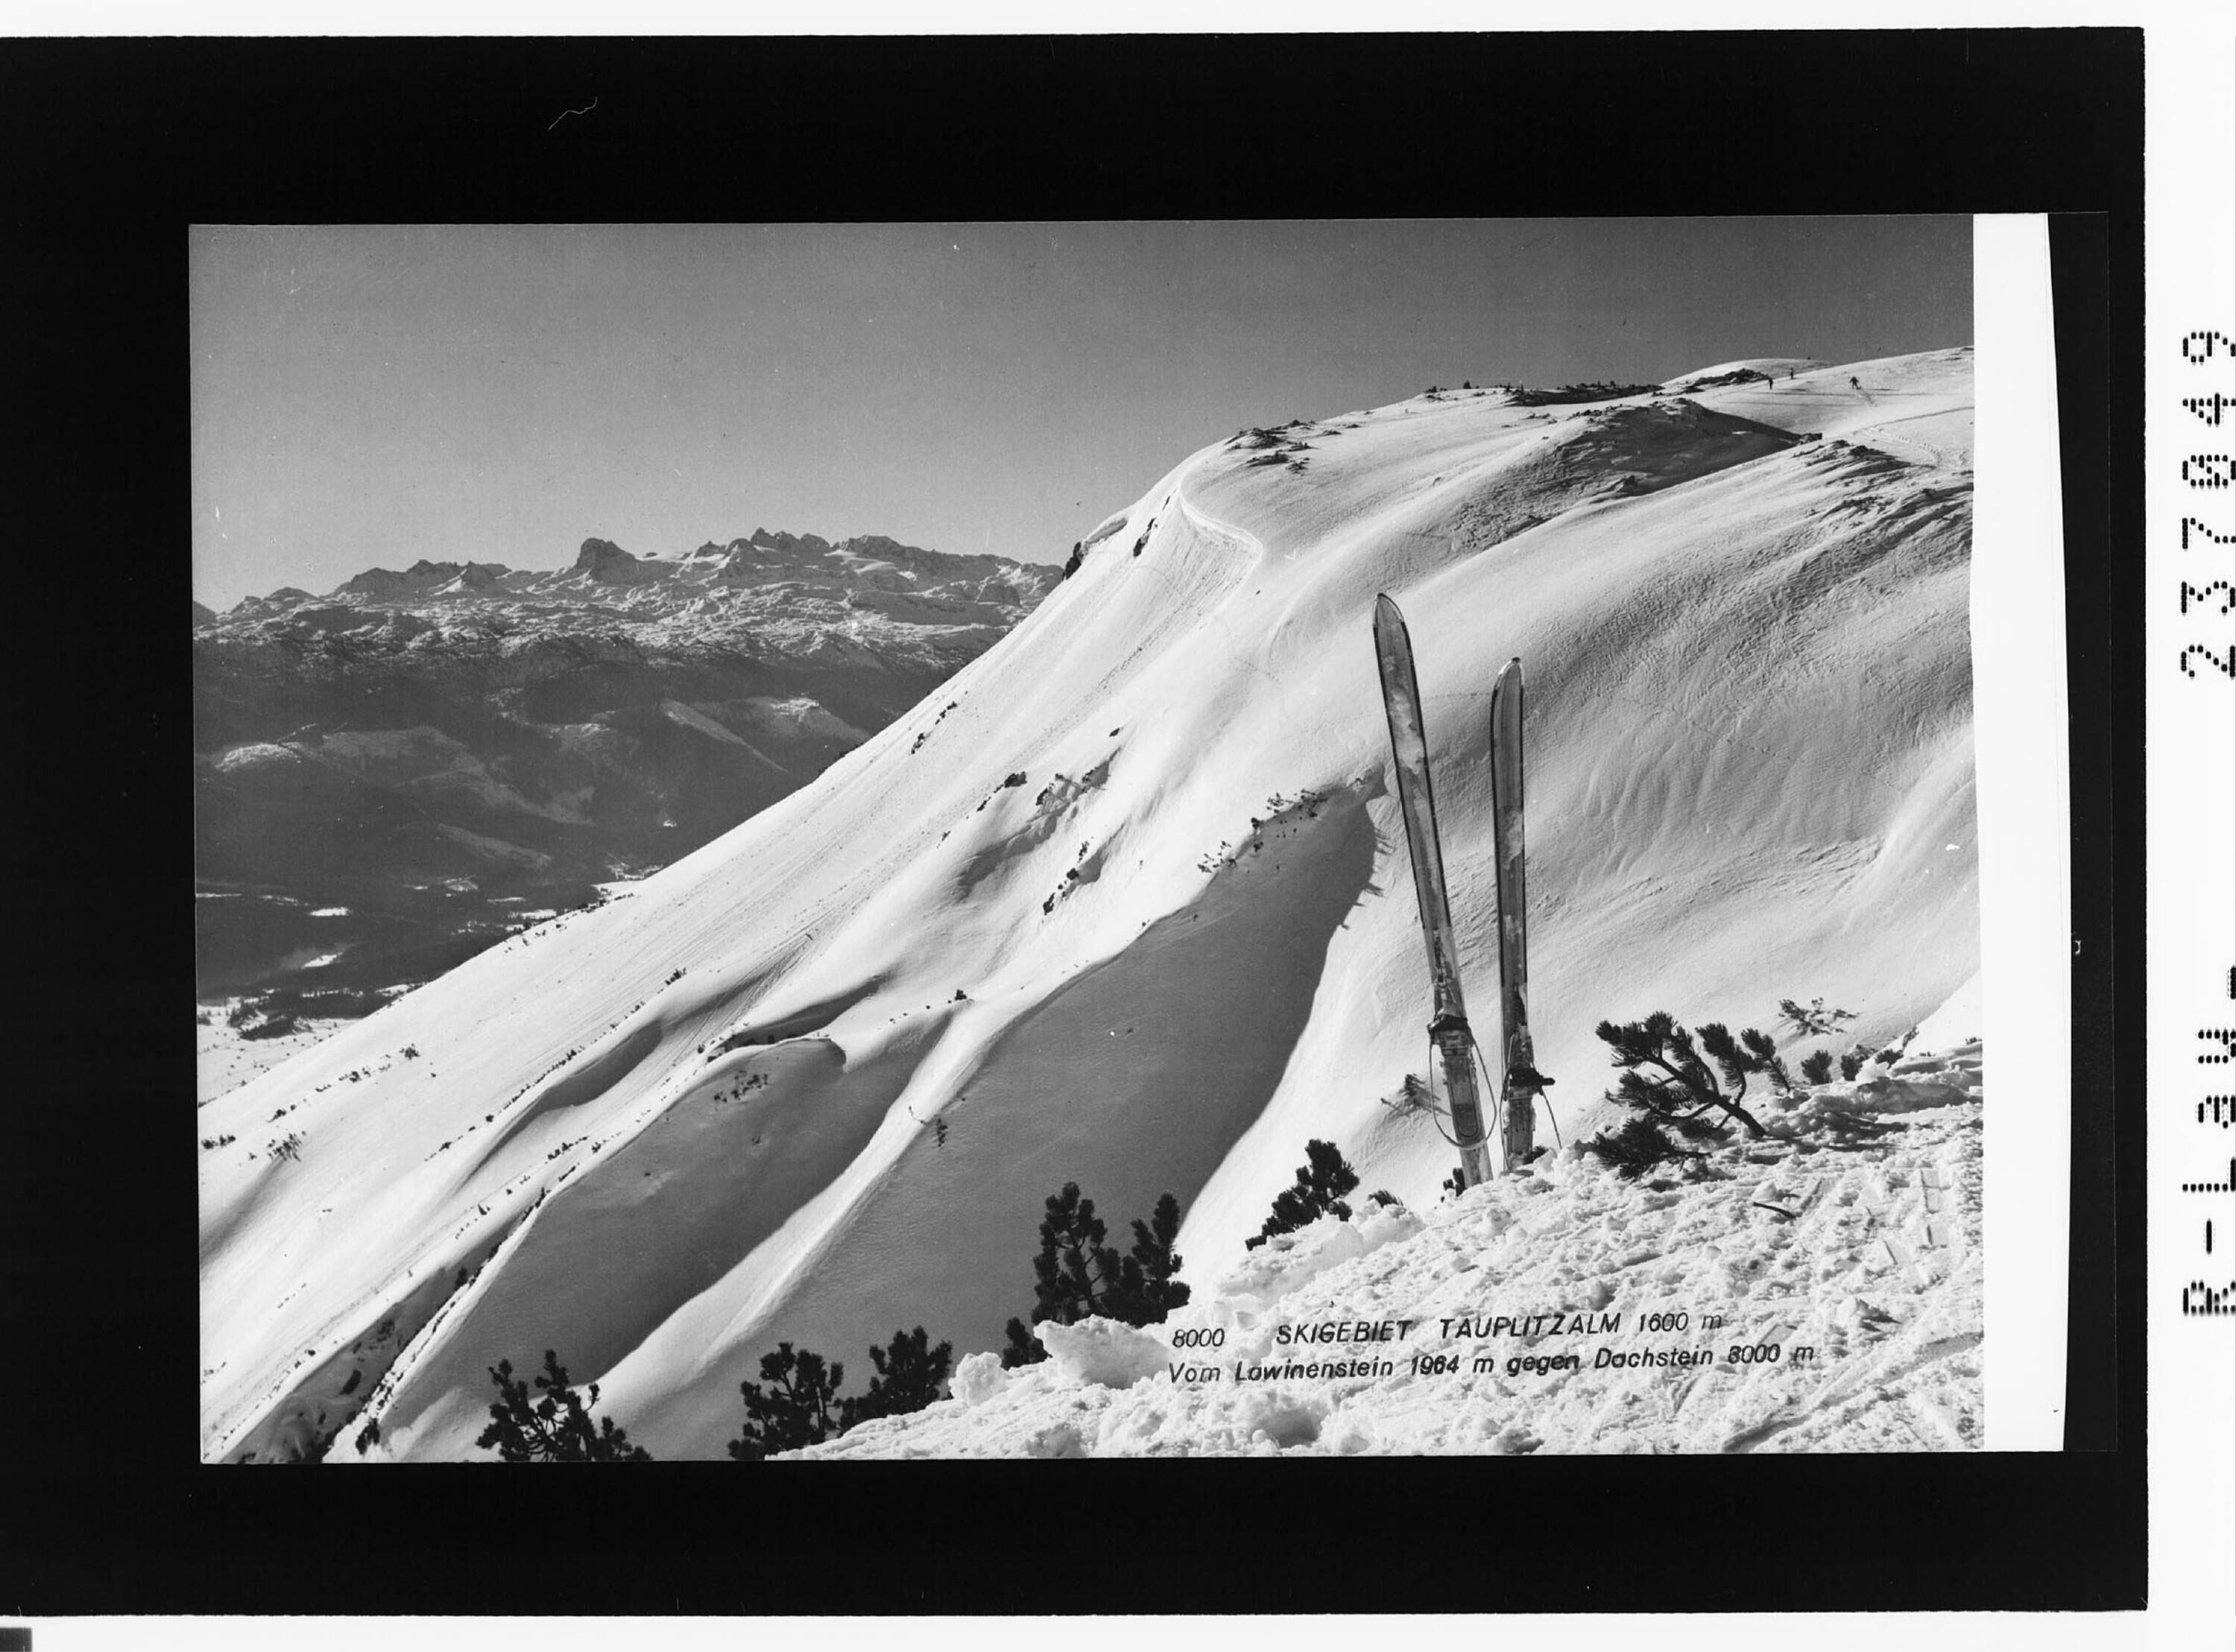 Skigebiet Tauplitzalm 1600 m / Vom Lawinenstein 1964 m gegen Dachstein 3000 m></div>


    <hr>
    <div class=